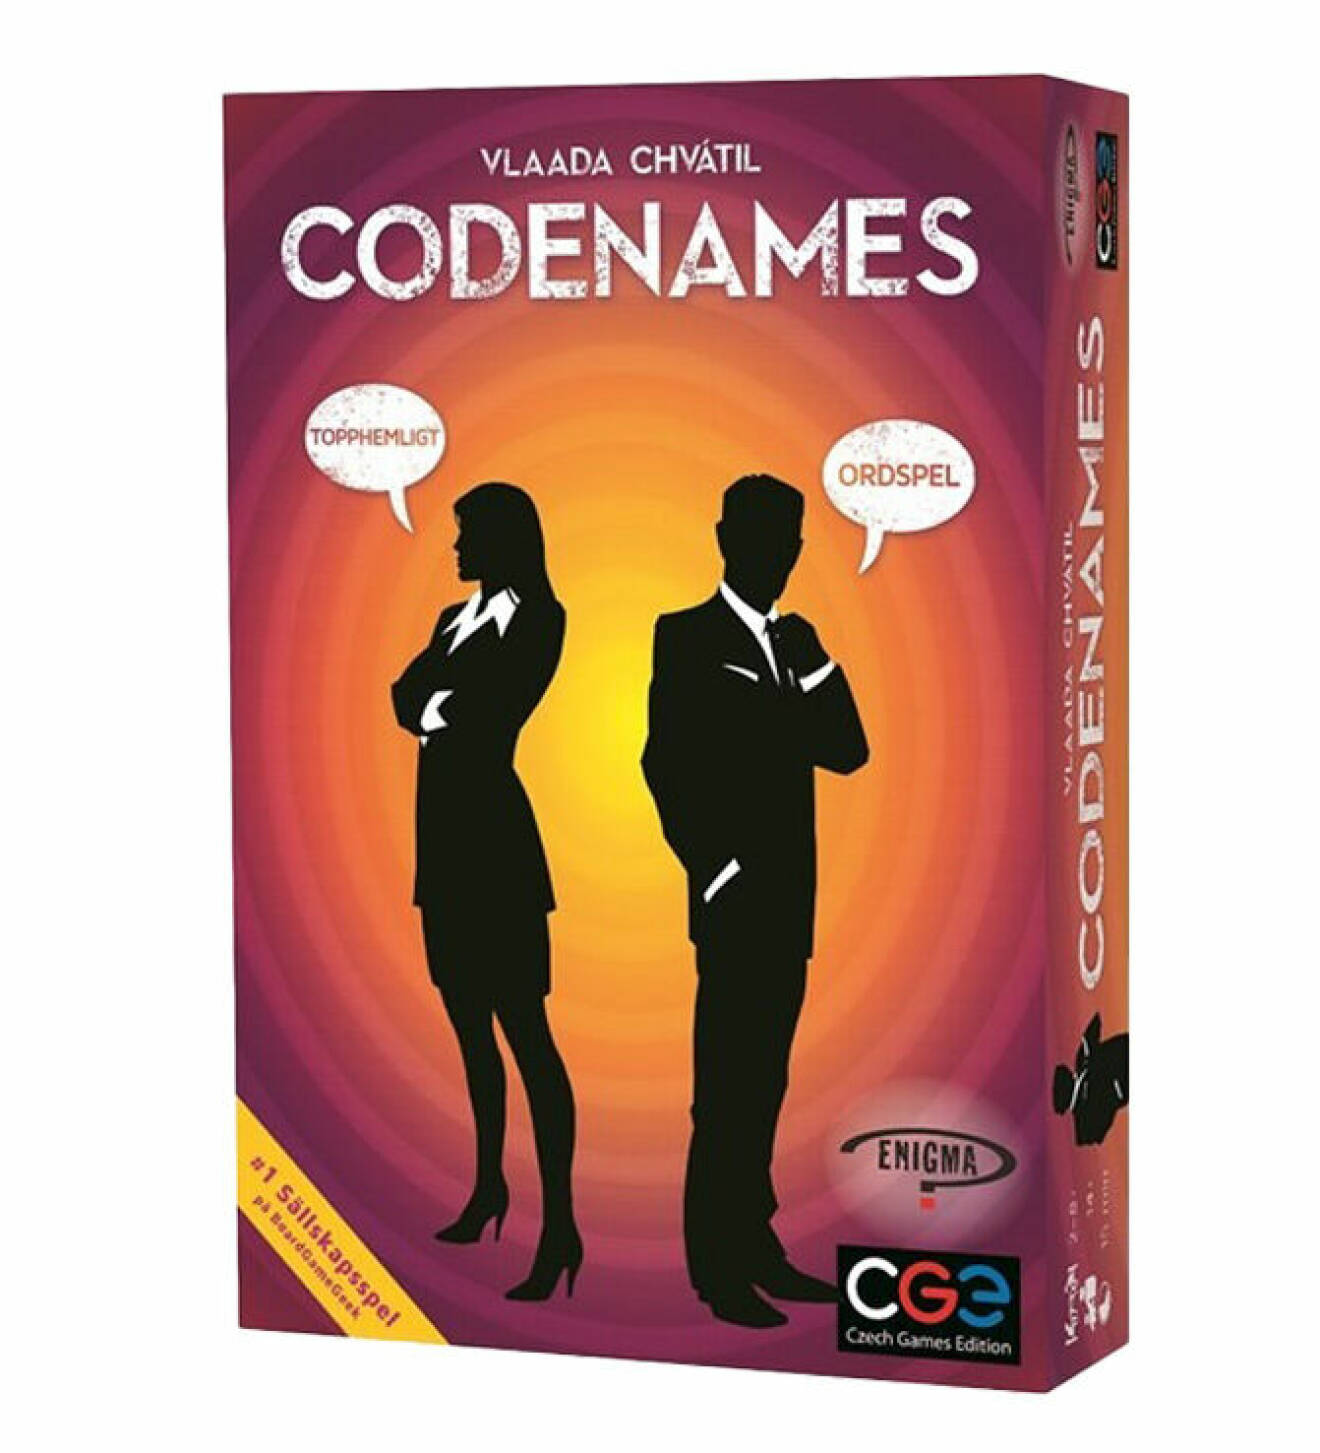 brädspelet codenames som består av olika ledtrådar